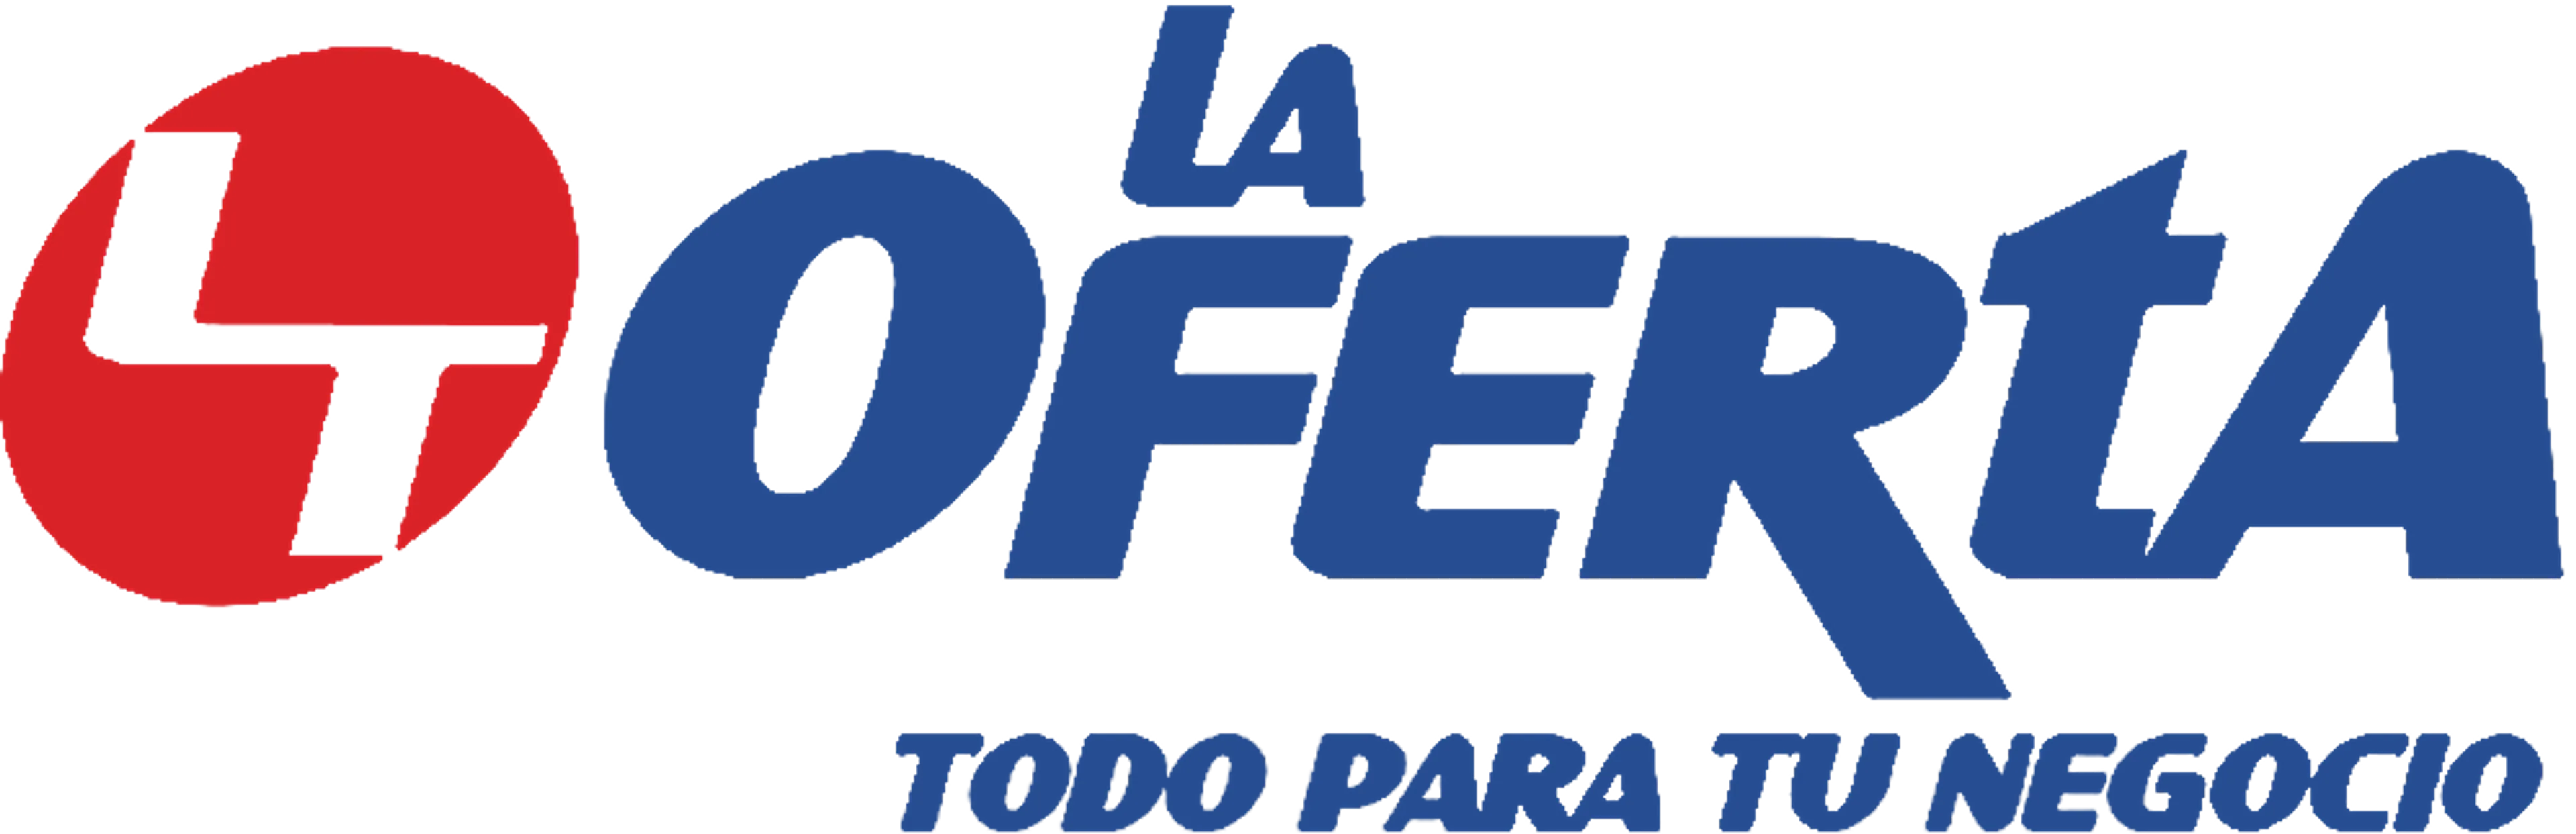 LA OFERTA logo